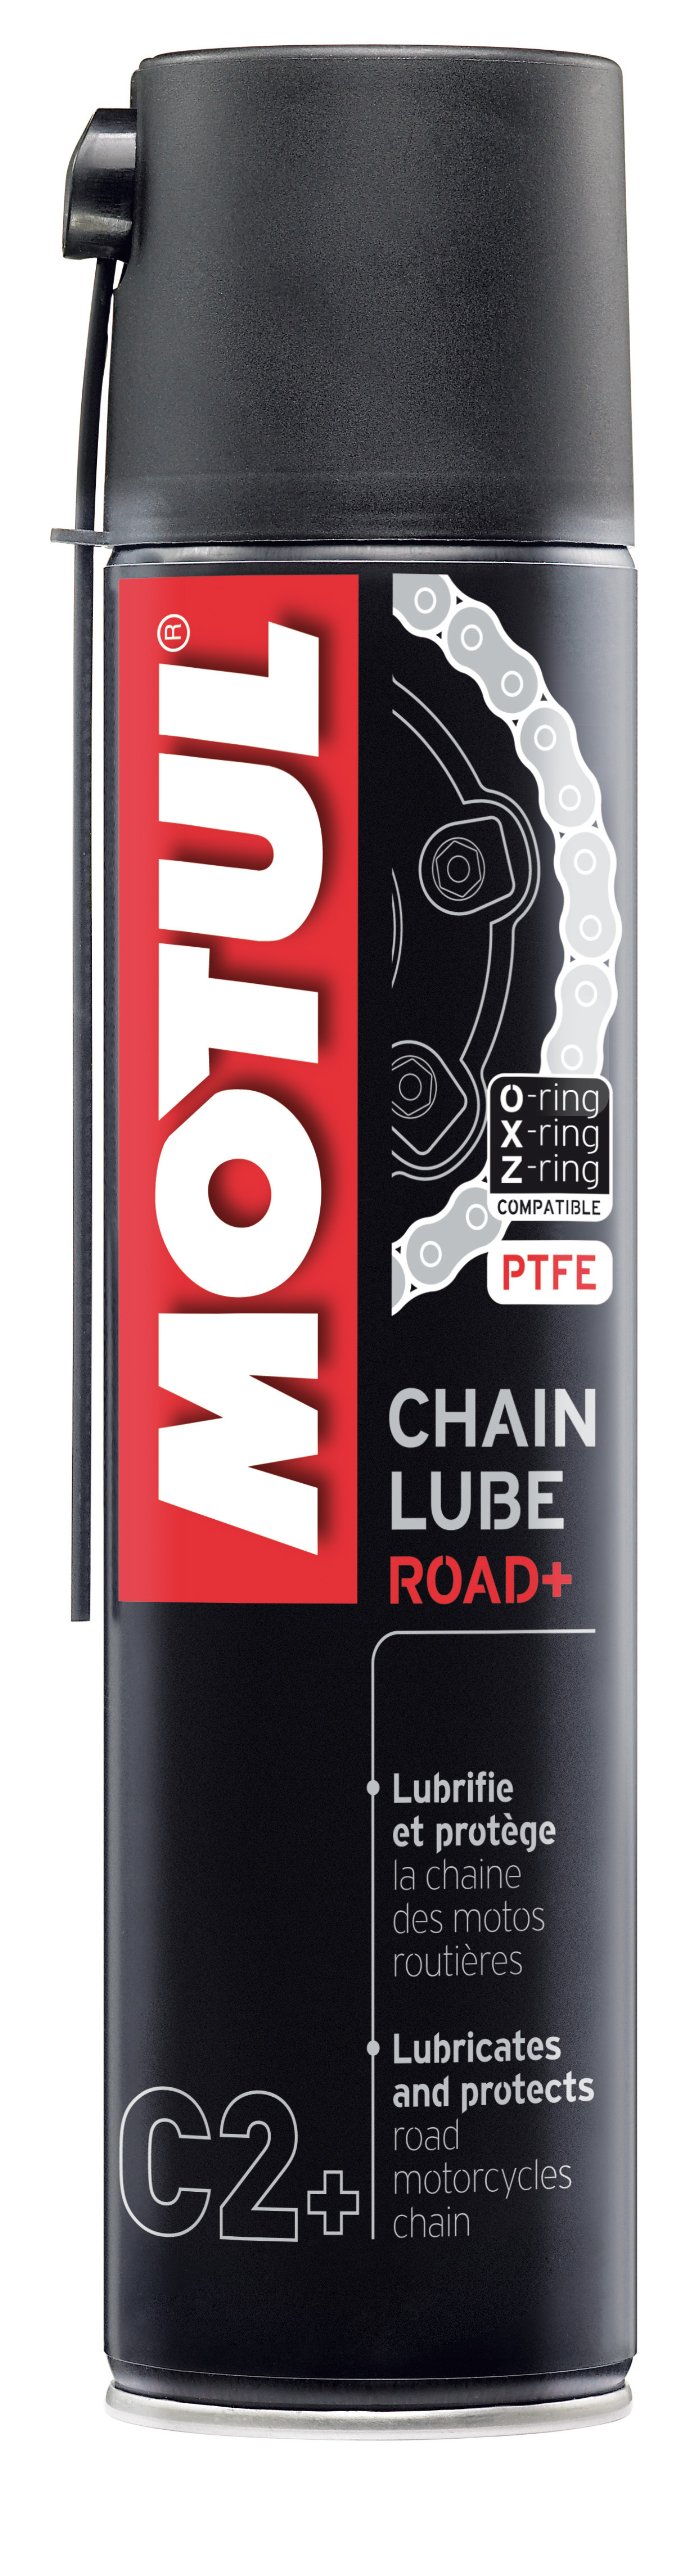 Motul 103008 C2+ Chain Lube Road Plus, 400 ml von Motul